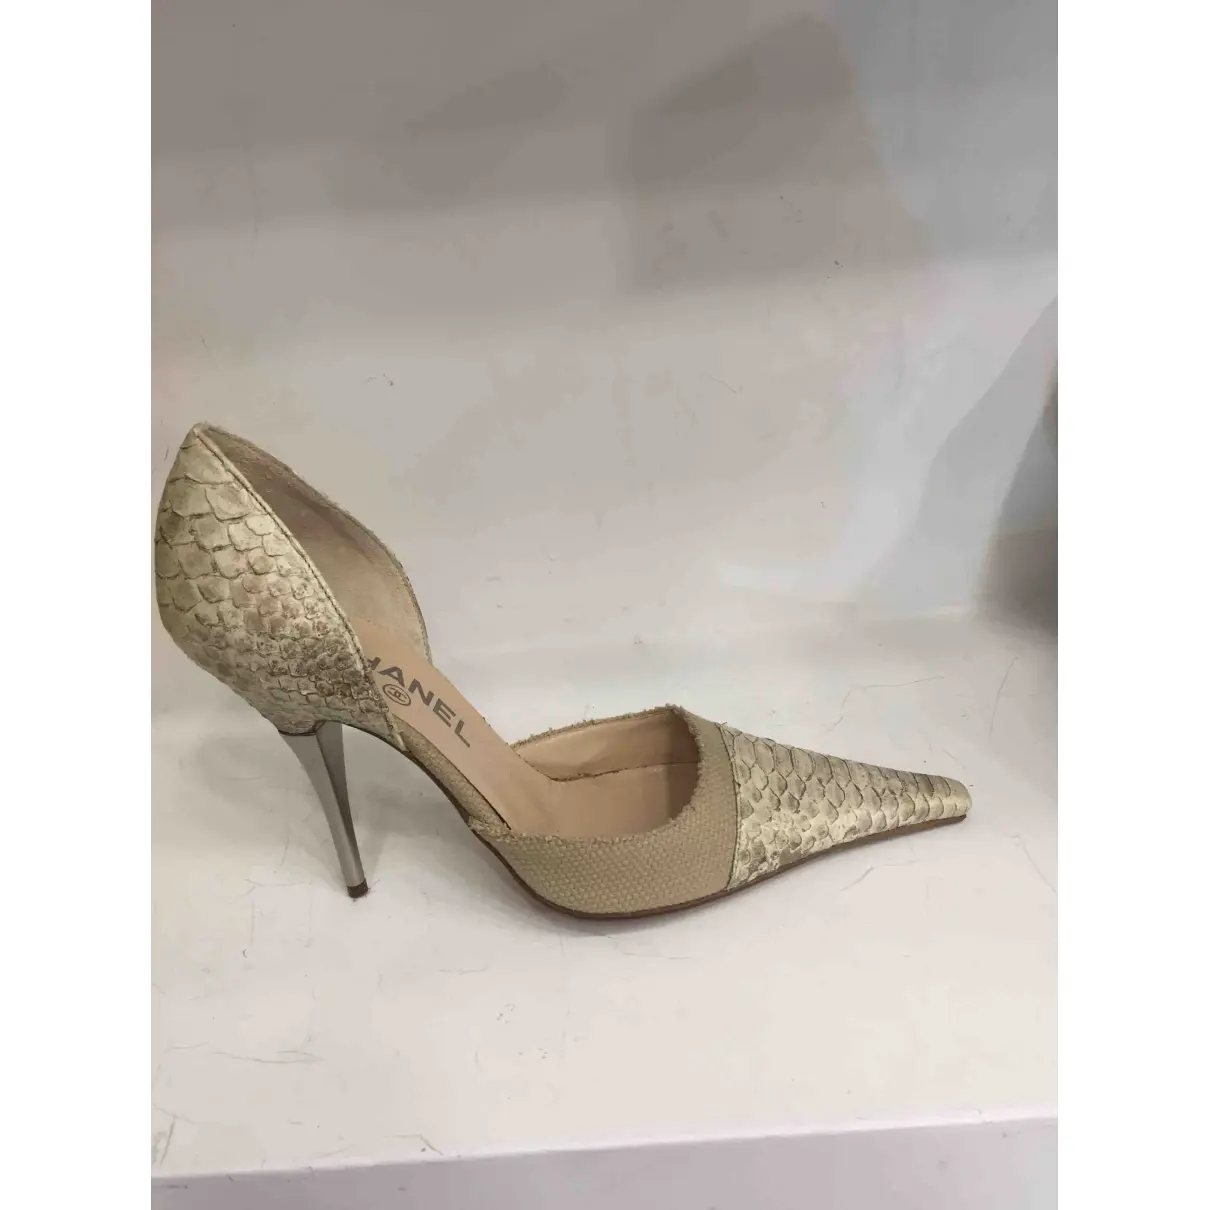 Chanel Python heels for sale - Vintage